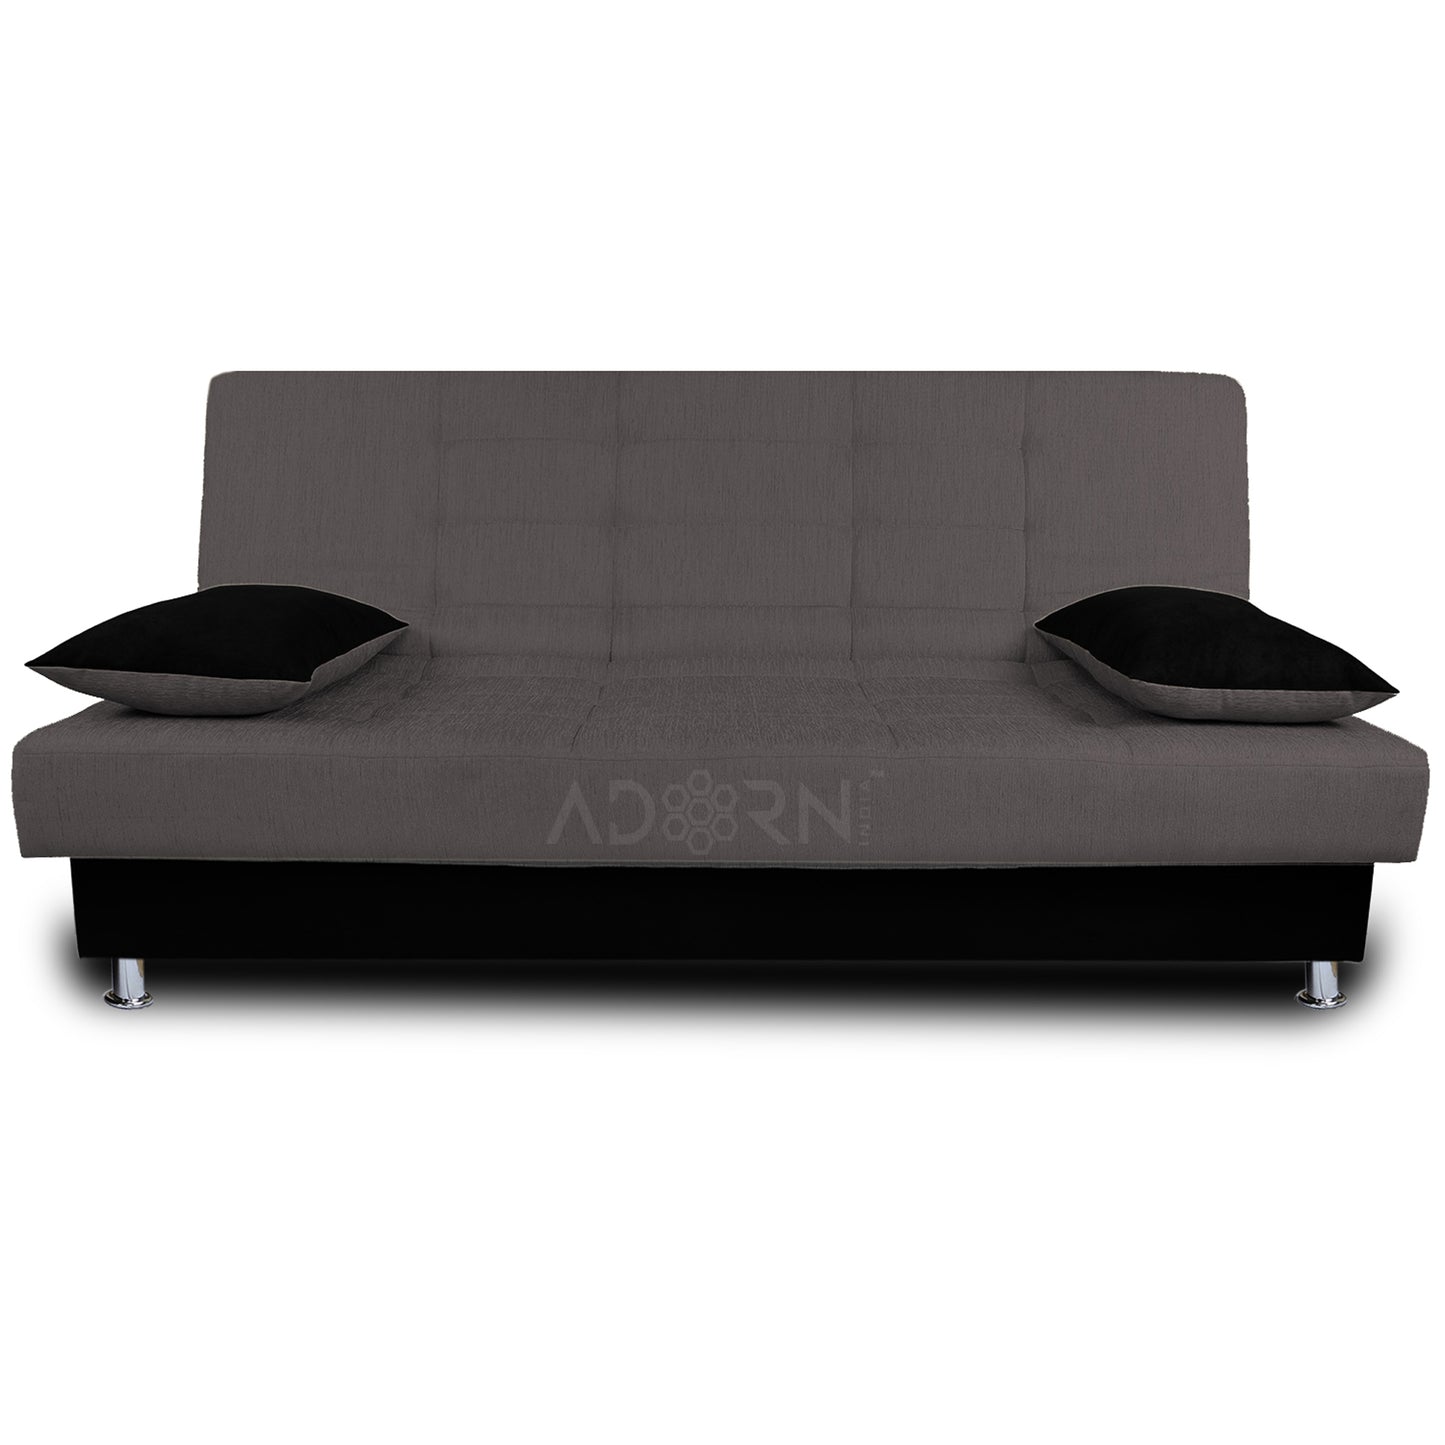 Adorn India Alyssum 3 Seater Sofa Cum bed (Grey & Black)